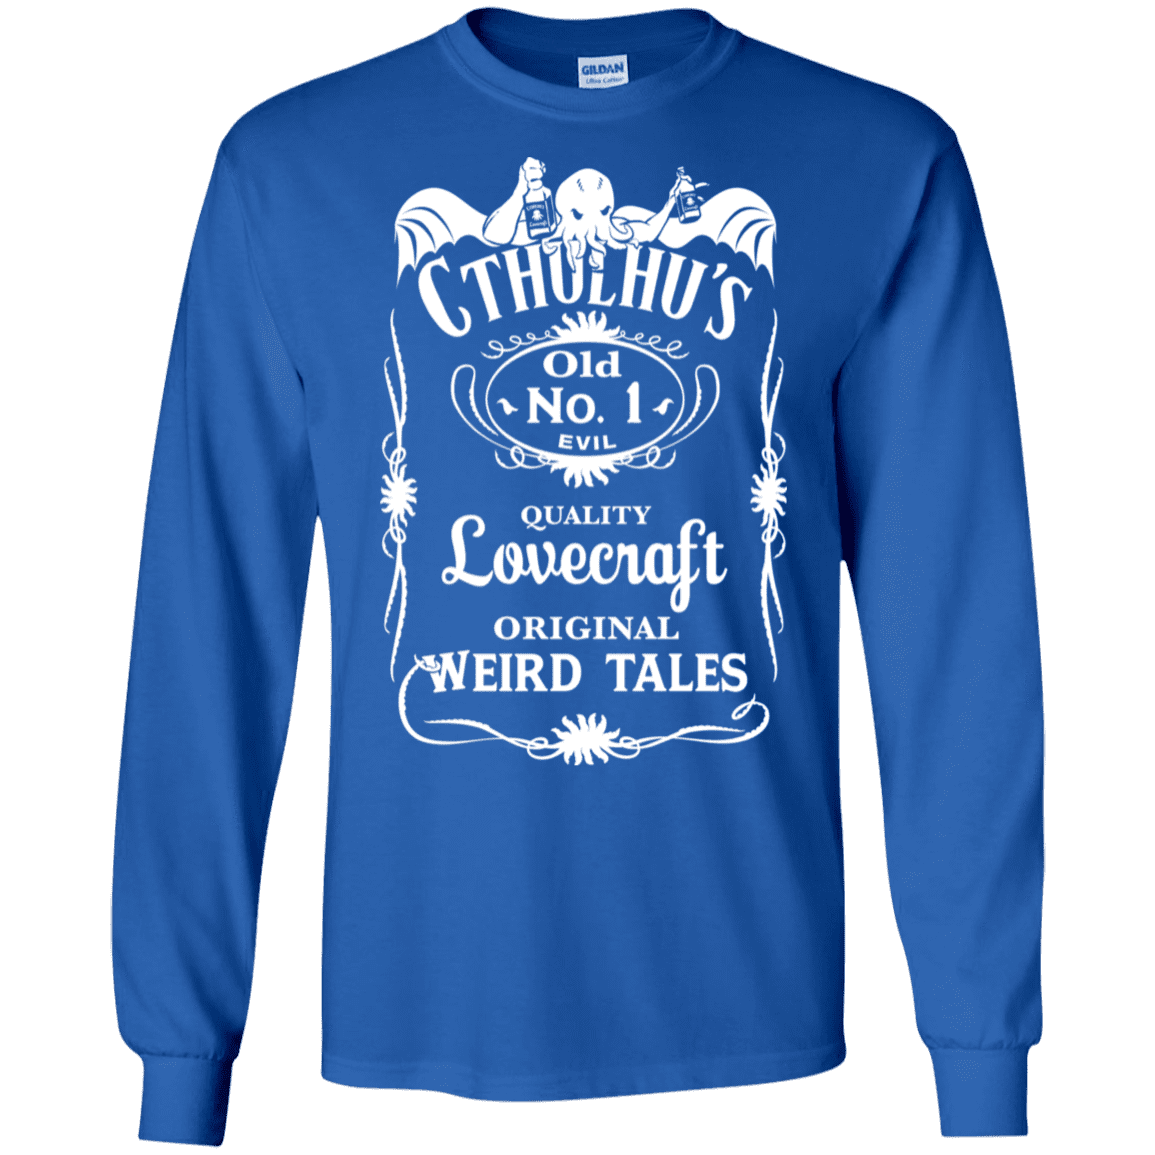 T-Shirts Royal / S Cthulhu's Men's Long Sleeve T-Shirt